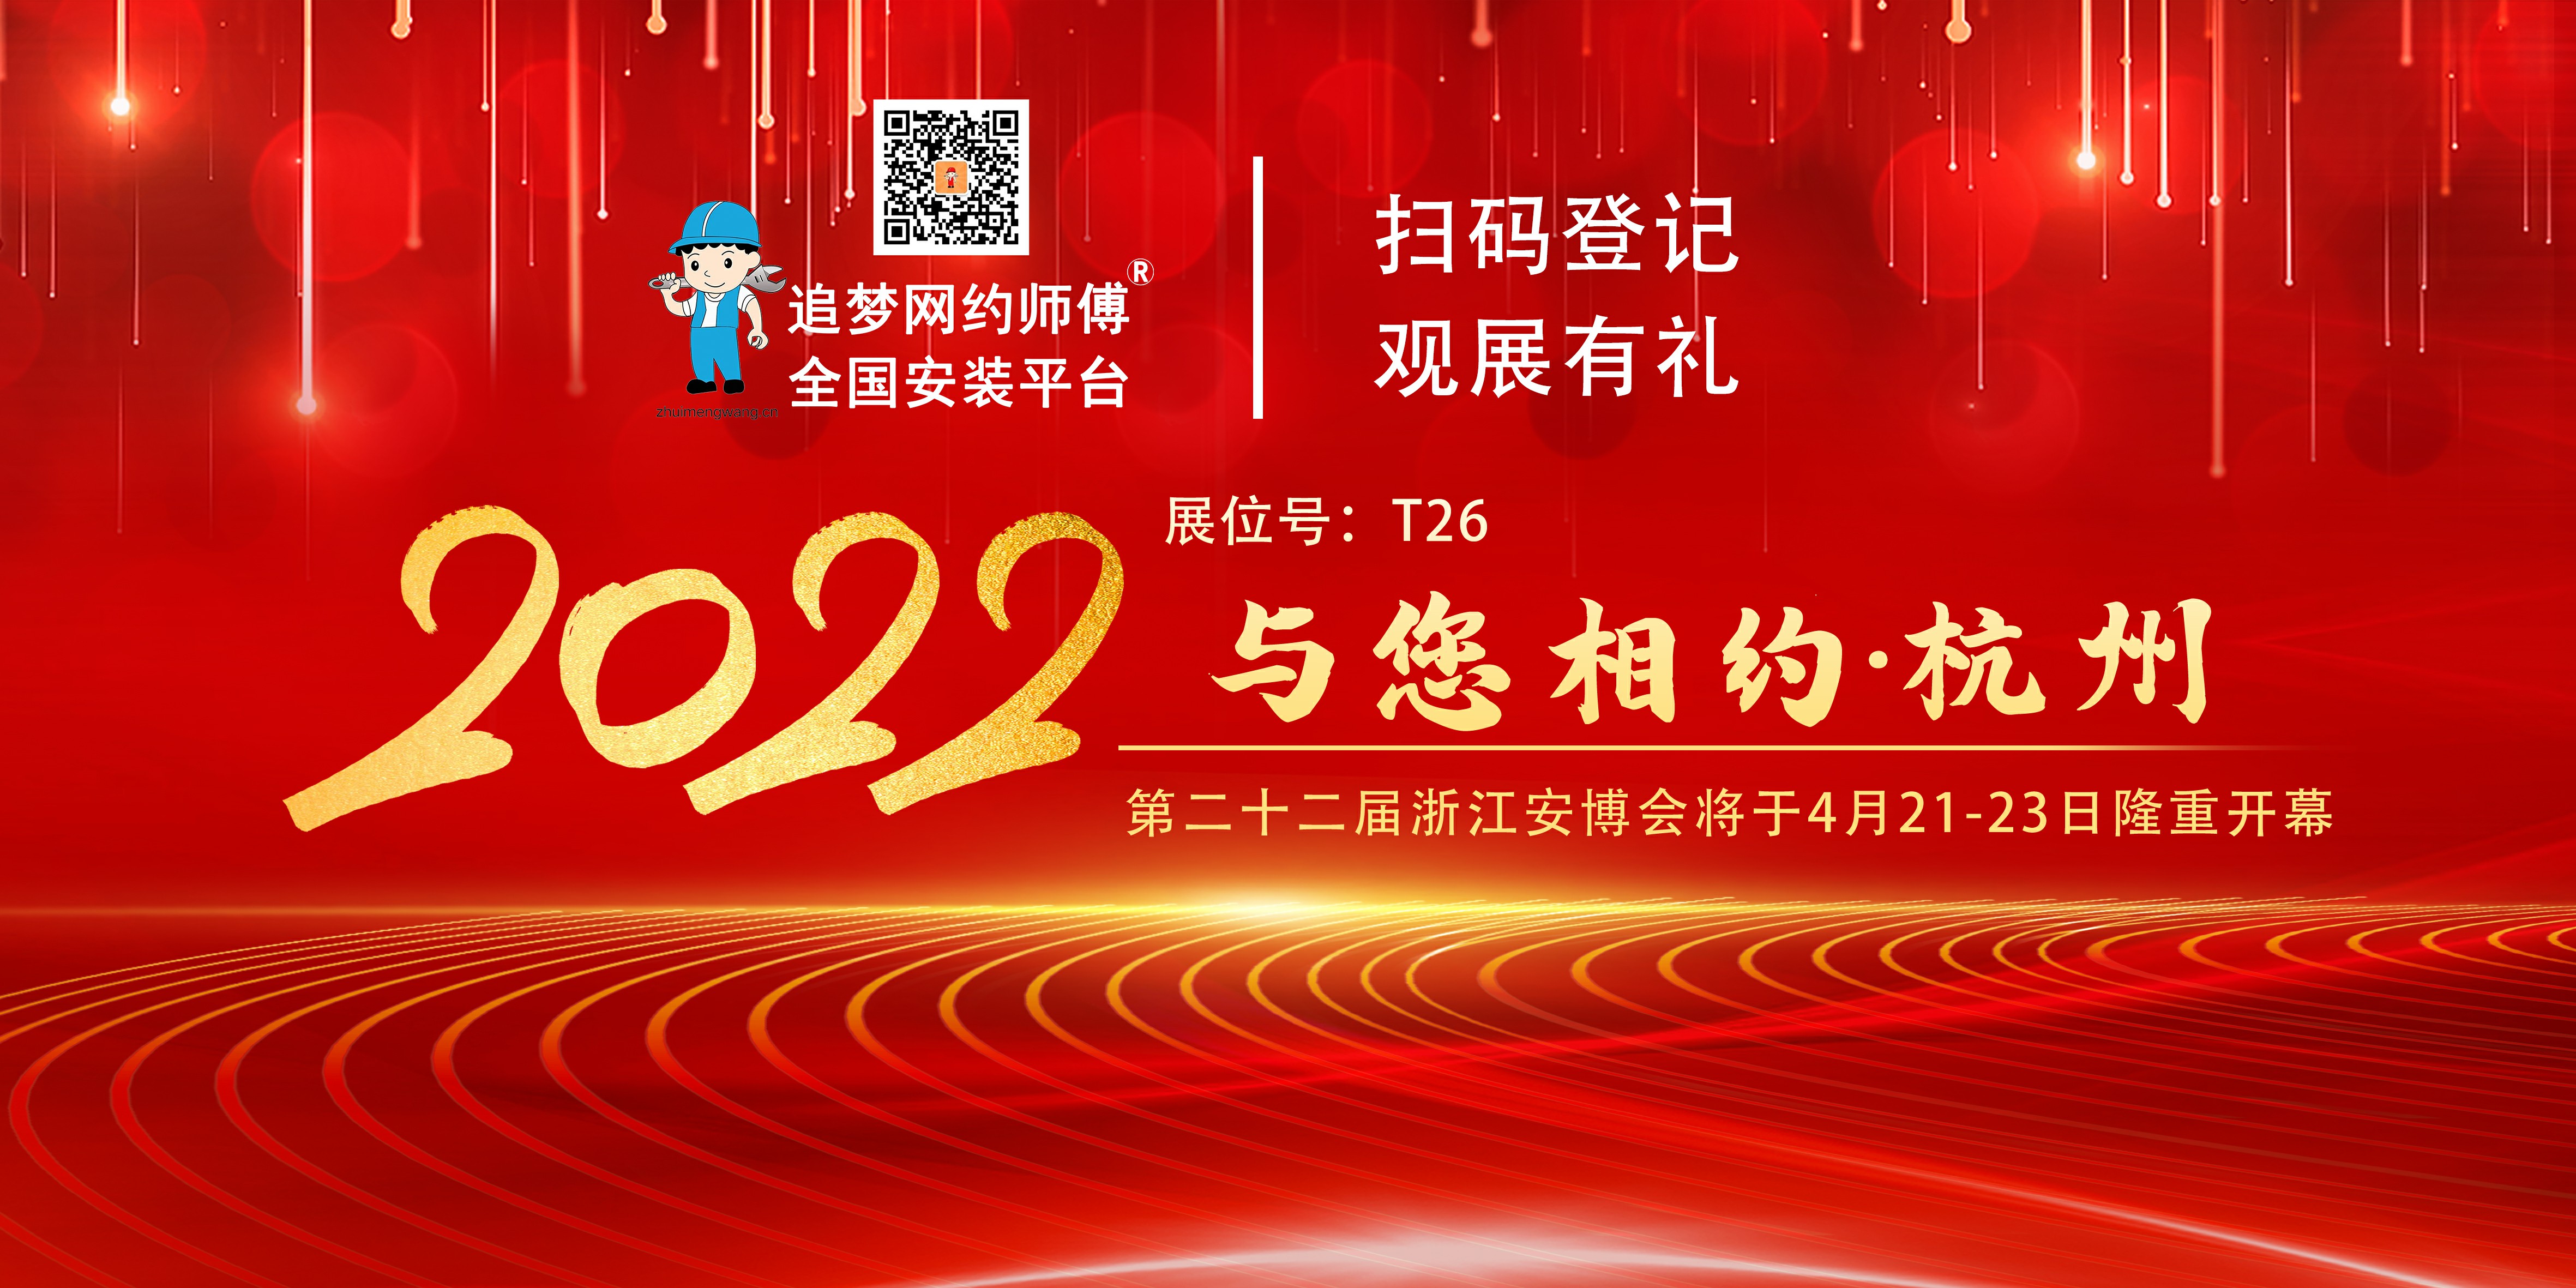 2022 第二十二届浙江安博会将在杭州隆重开幕